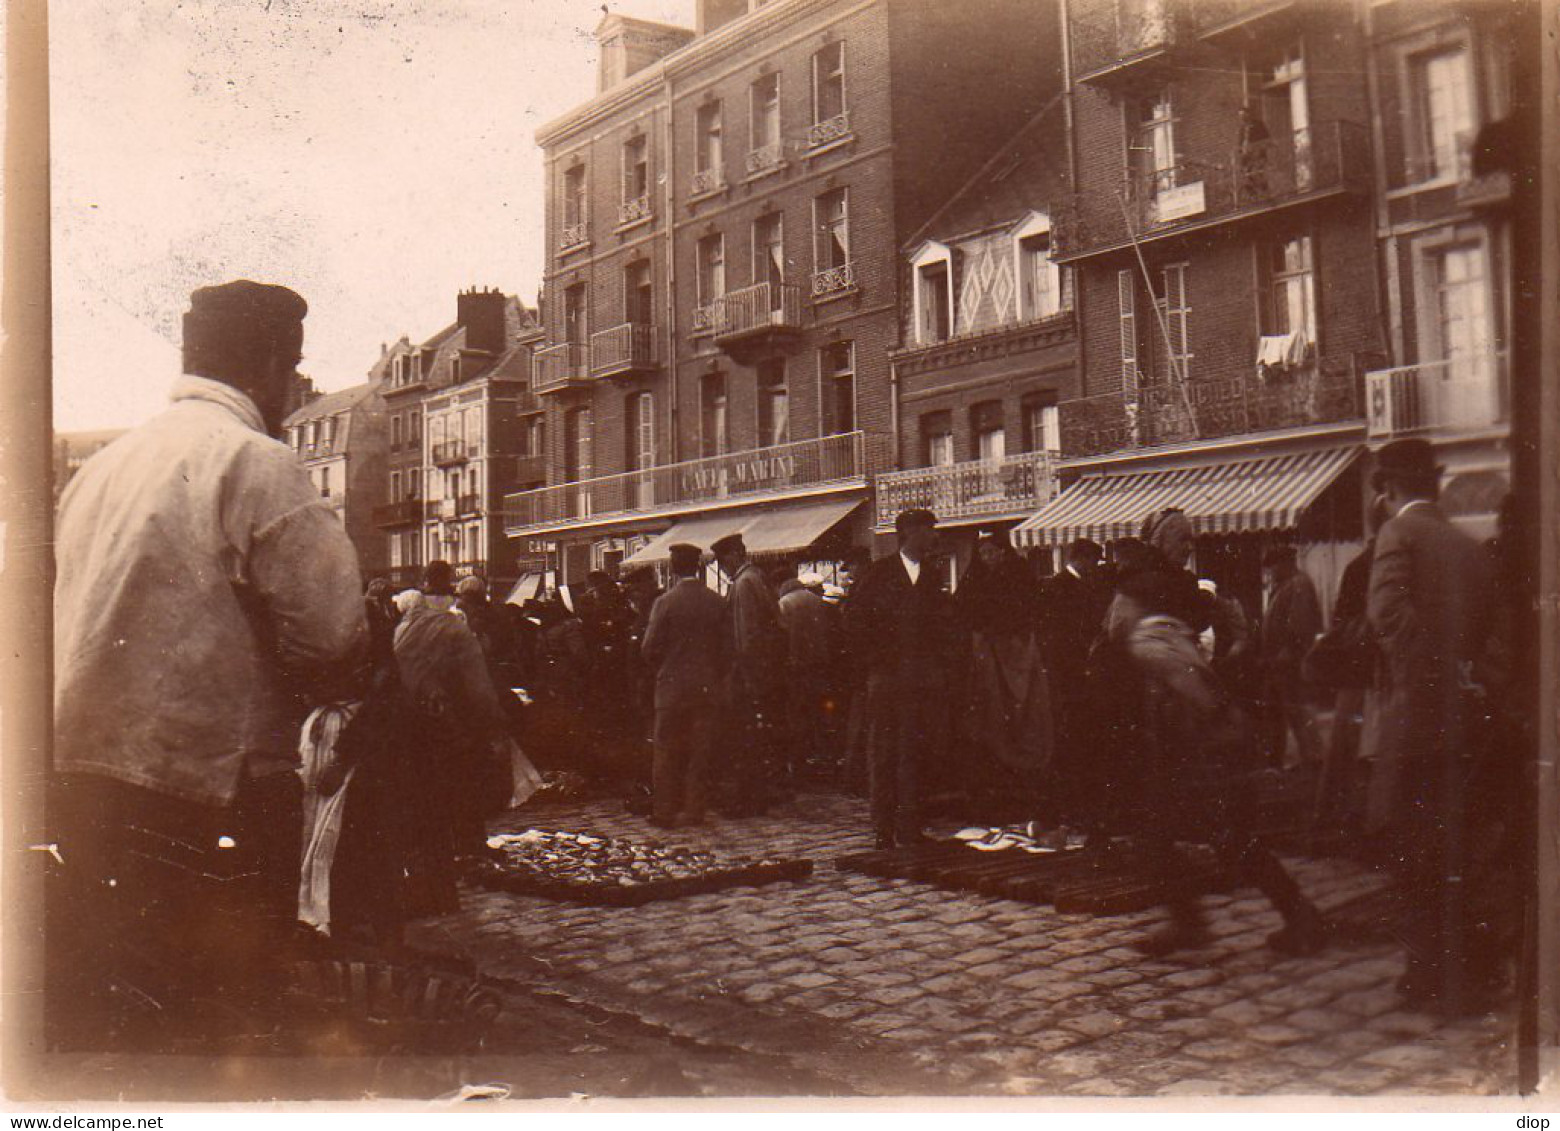 Photo Vintage Paris Snap Shop -foule Crowd P&ecirc;cheur Sinner March&eacute; Market  - Métiers